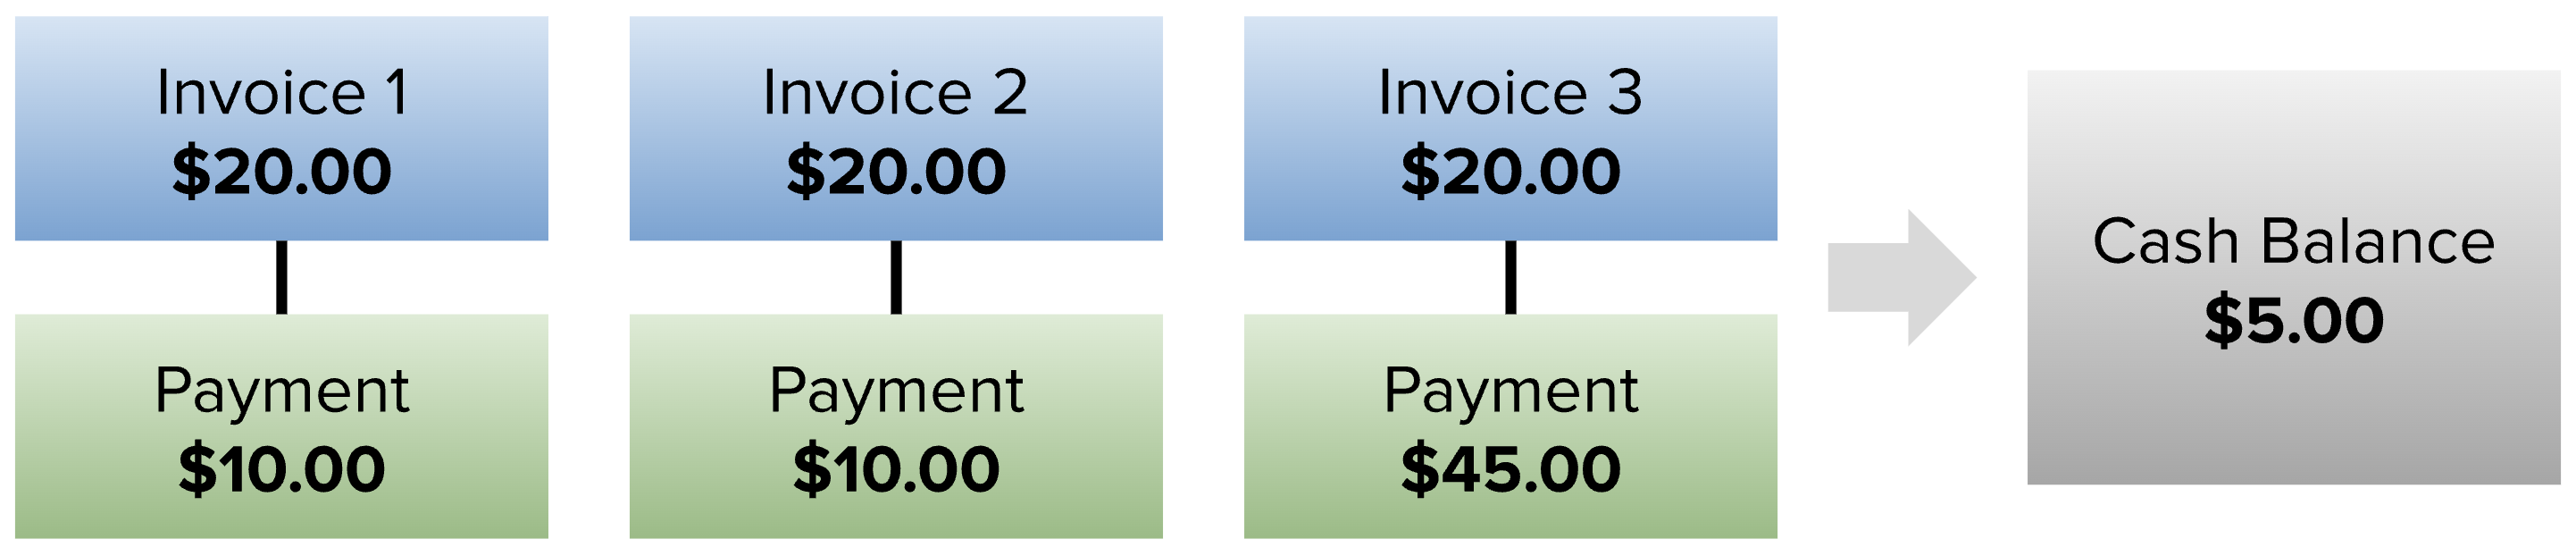 Invoice stream example